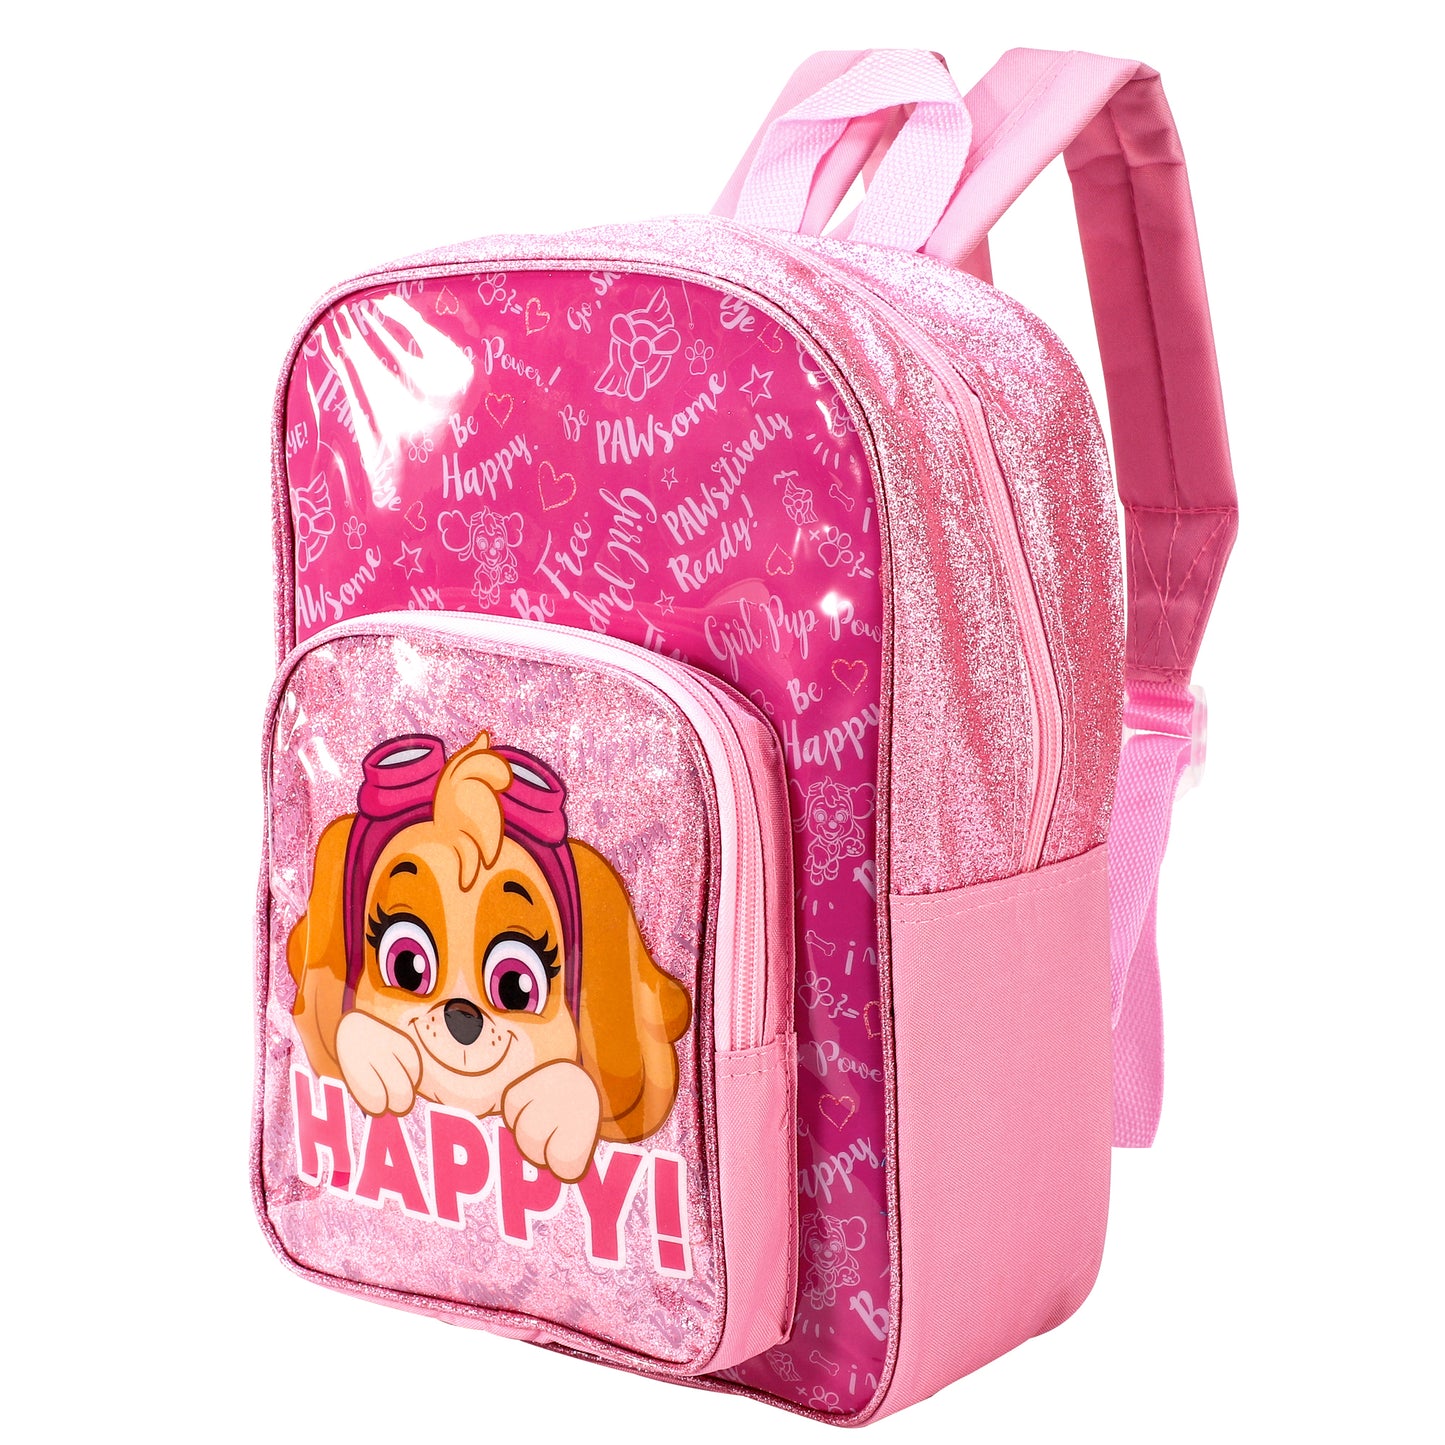 Paw Patrol Backpack School Bag “Skye's Happy”